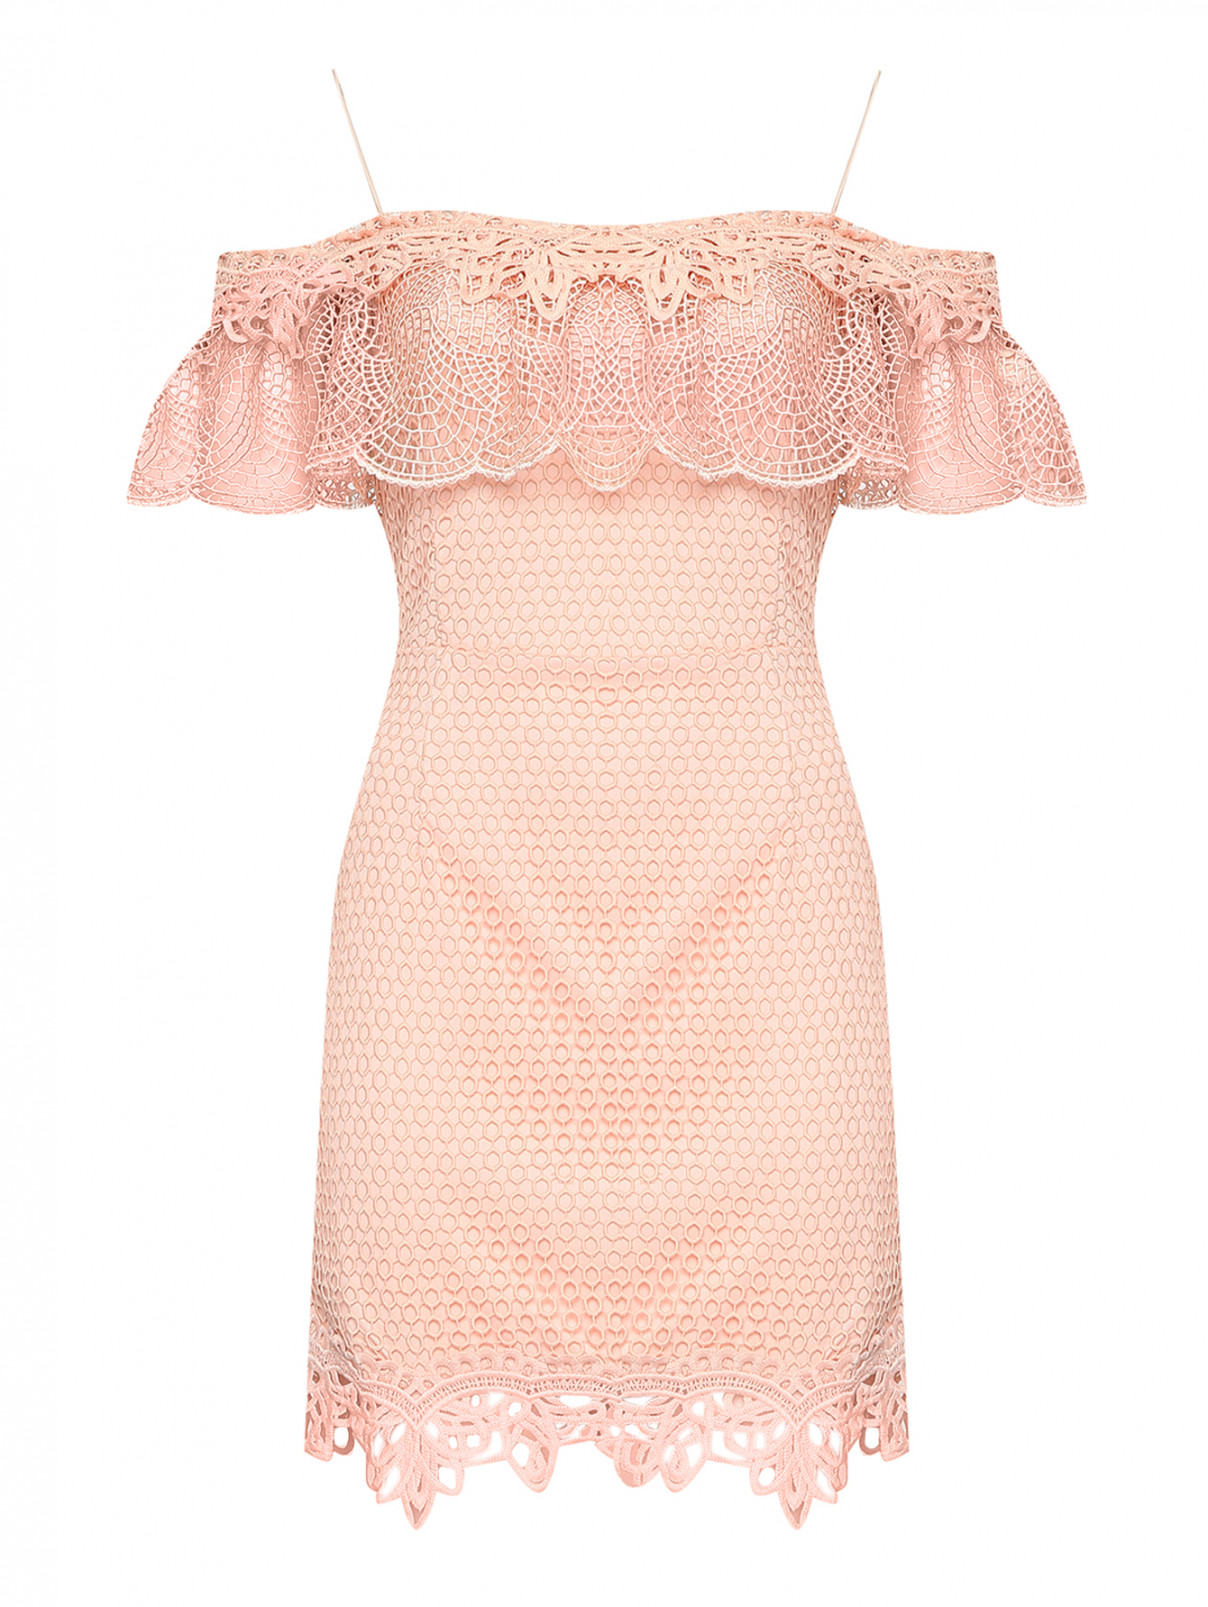 Ажурное платье с отрезной талией Forever Unique  –  Общий вид  – Цвет:  Розовый